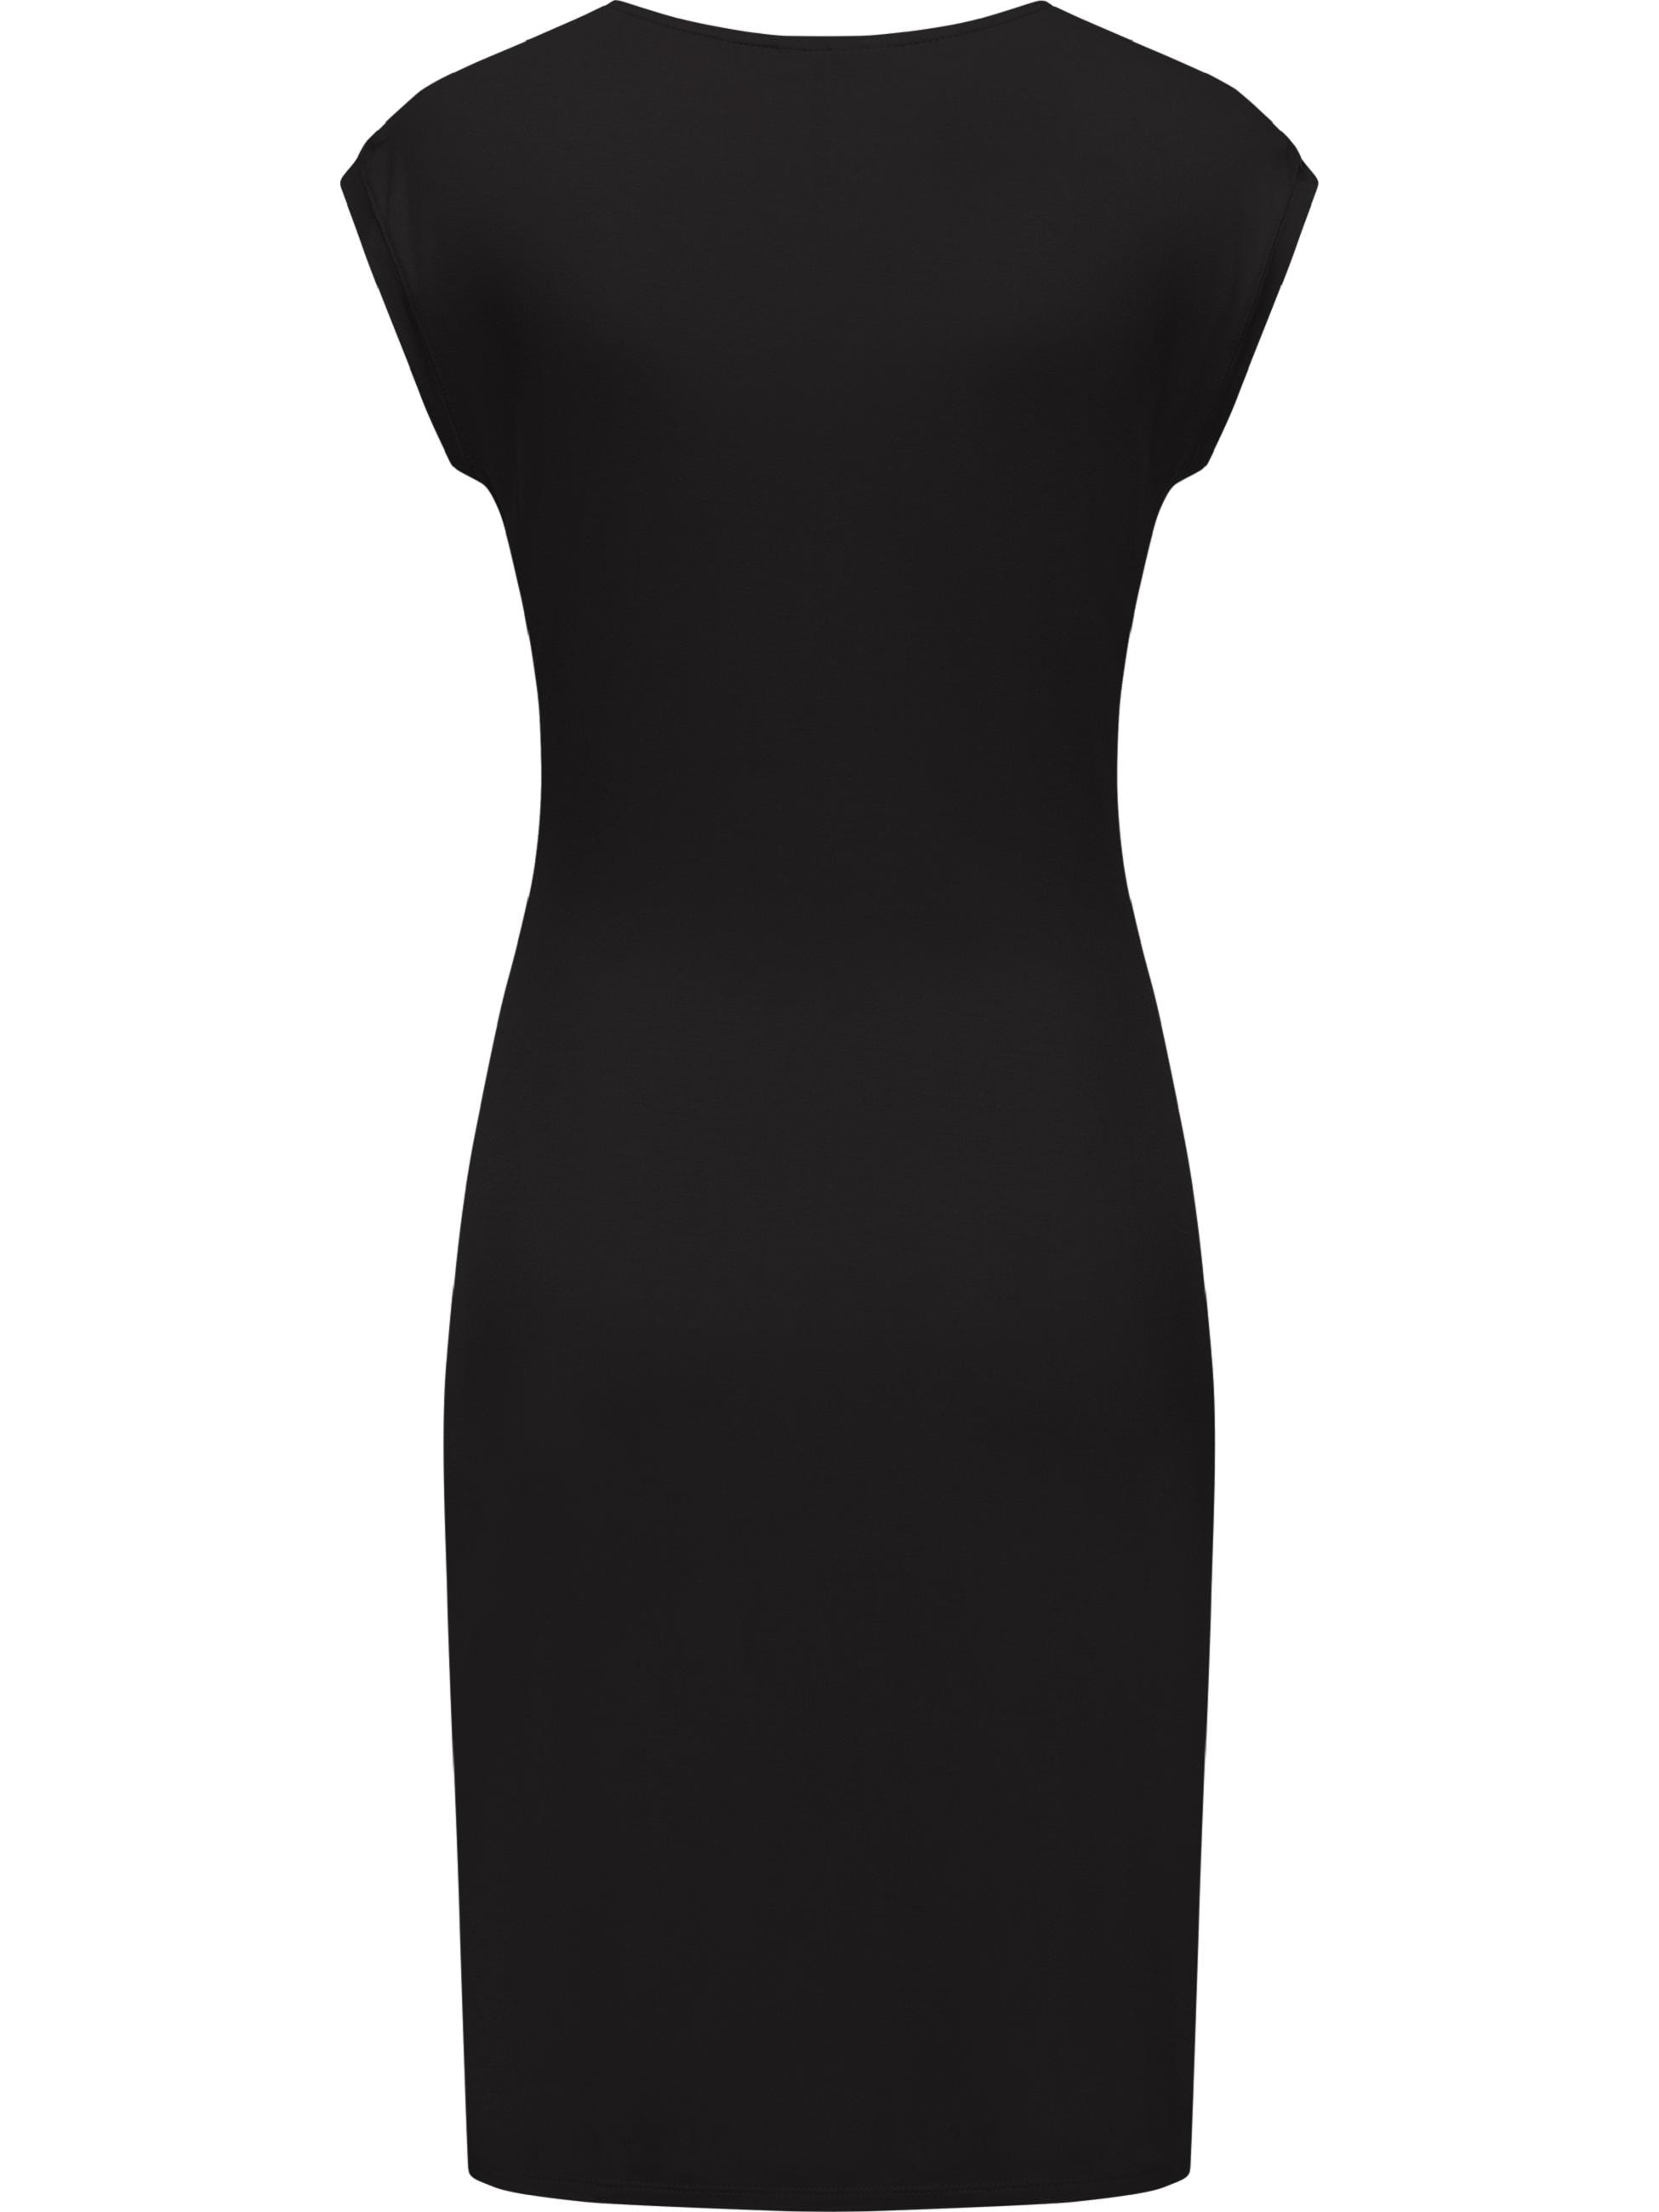 Ragwear Etuikleid »Sommerkleid Crupi«, figurbetontes Sommerkleid mit Raffung an der Taille